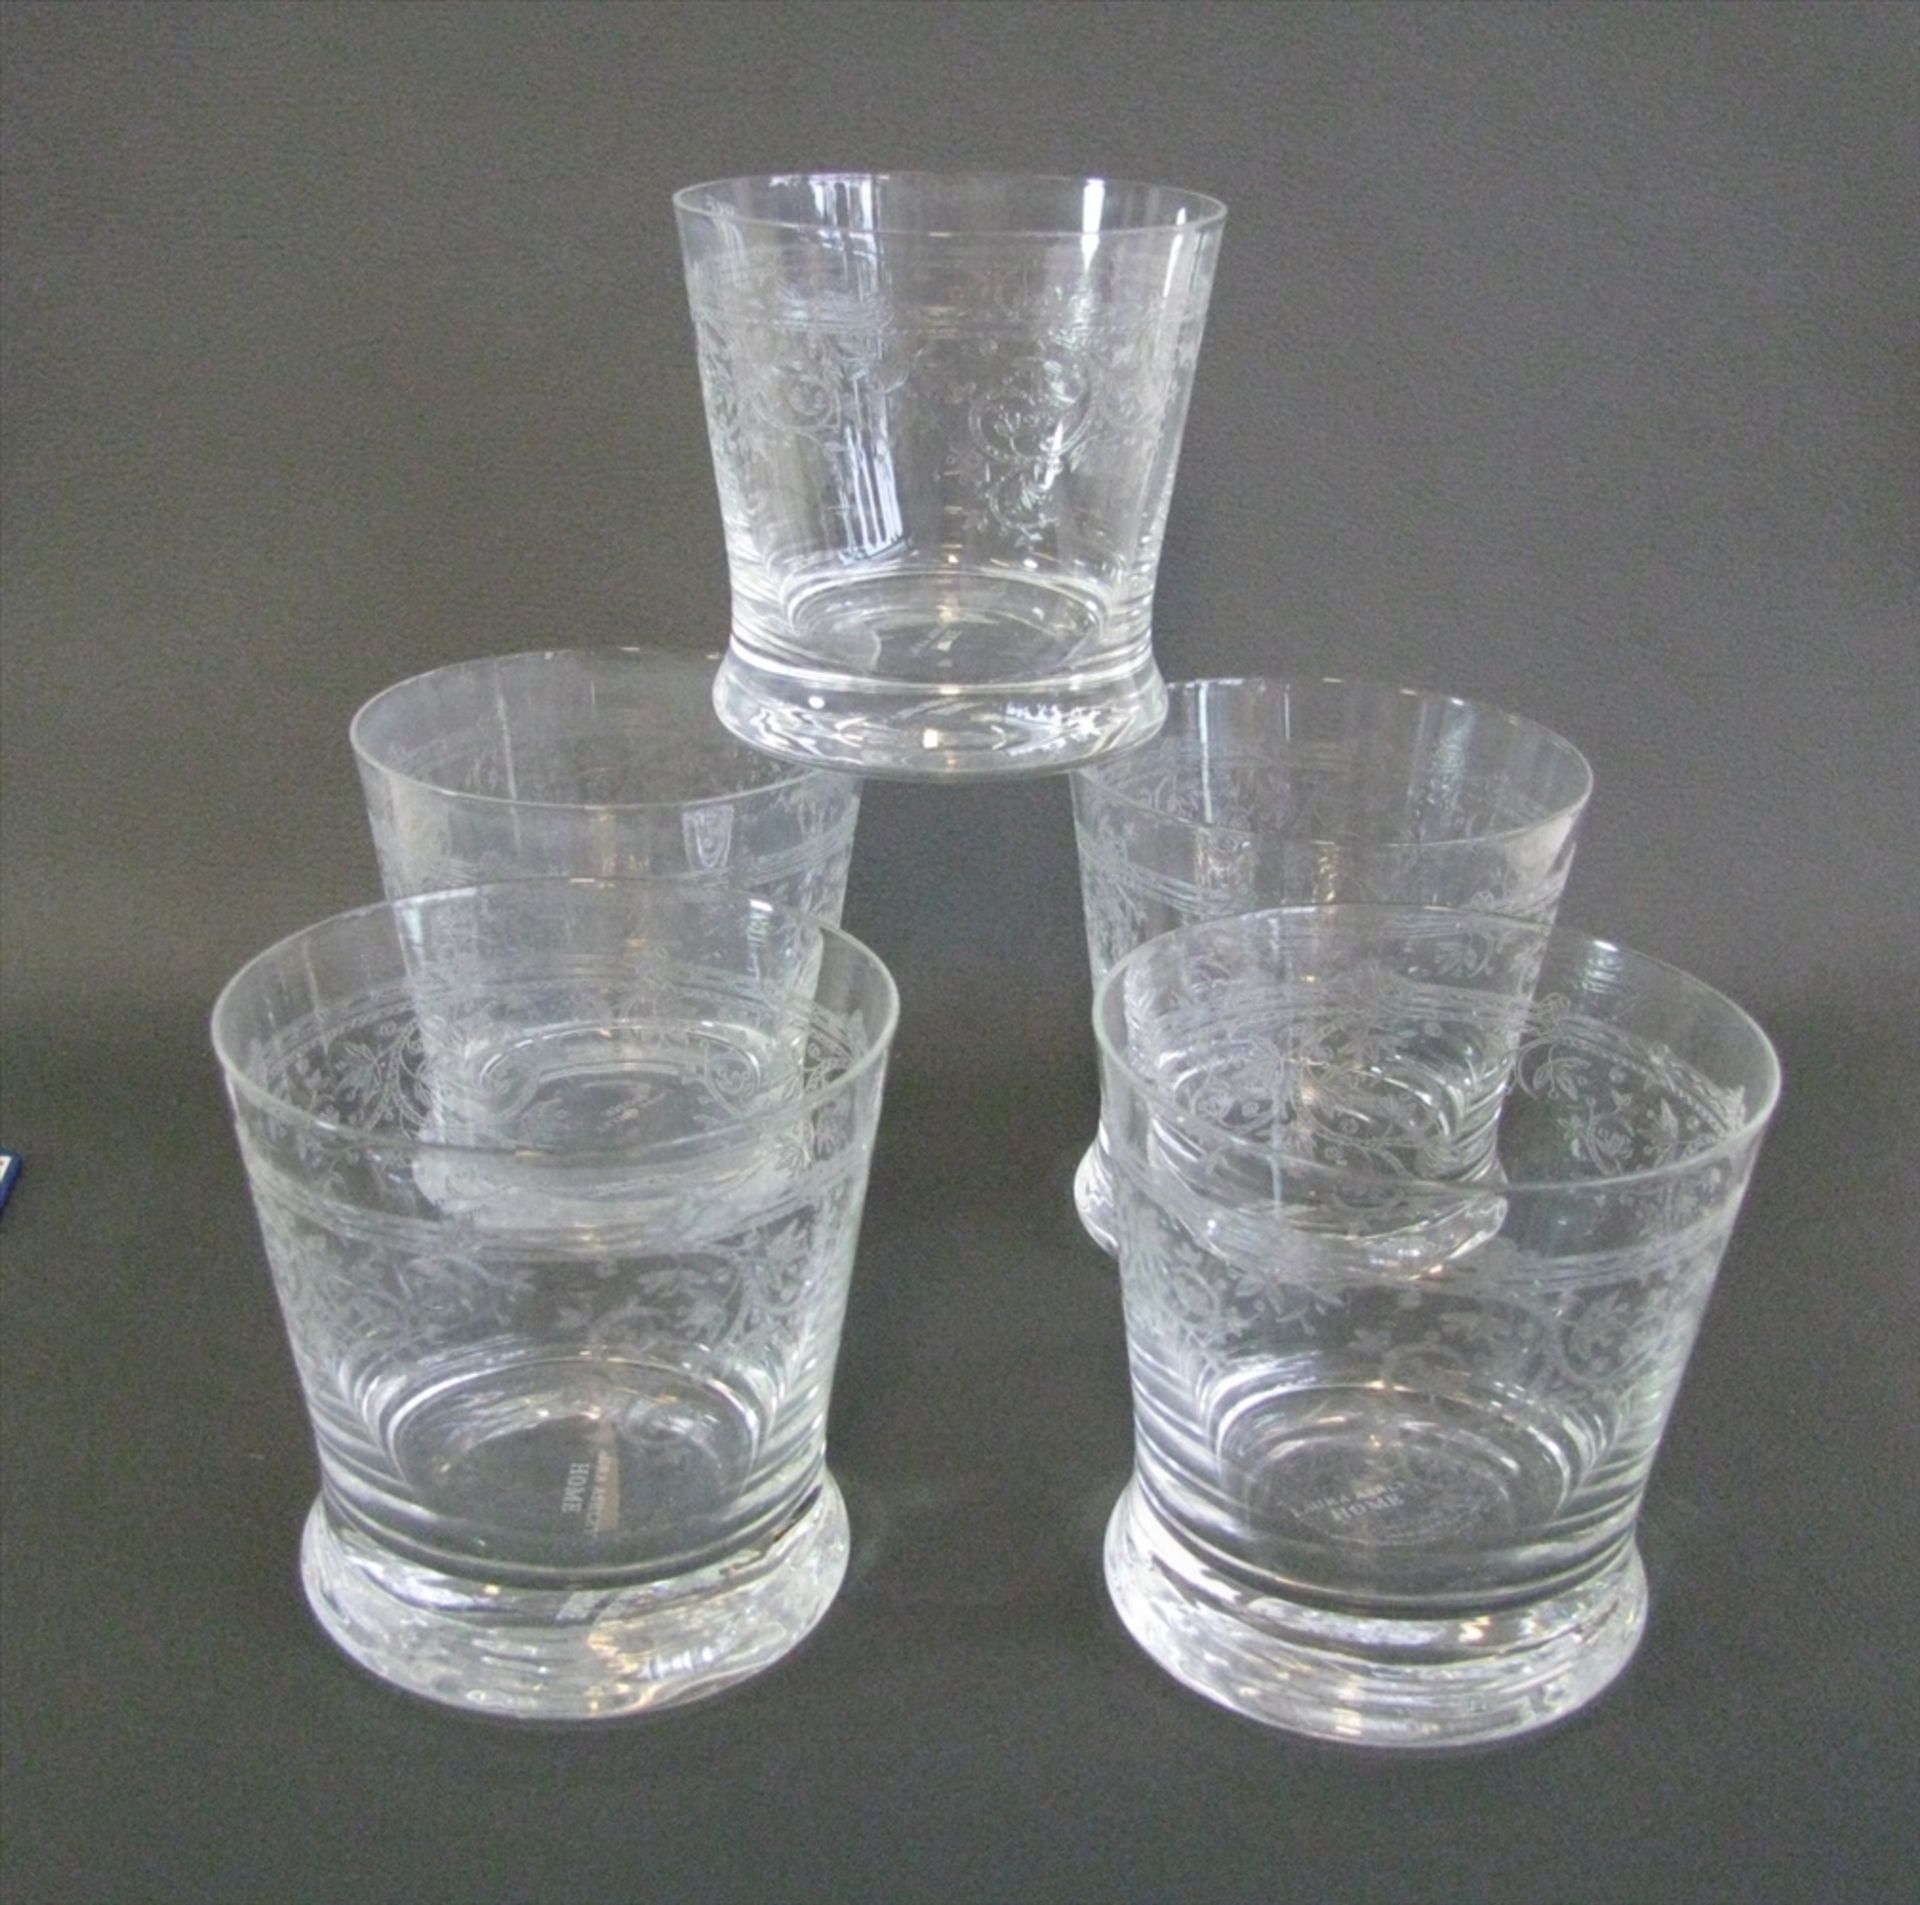 4 Gläser, Laura Ashley, farbloses Glas mit Diamantschliff, 2 Chips, h 9 cm, d 9 cm.- - -19.00 %